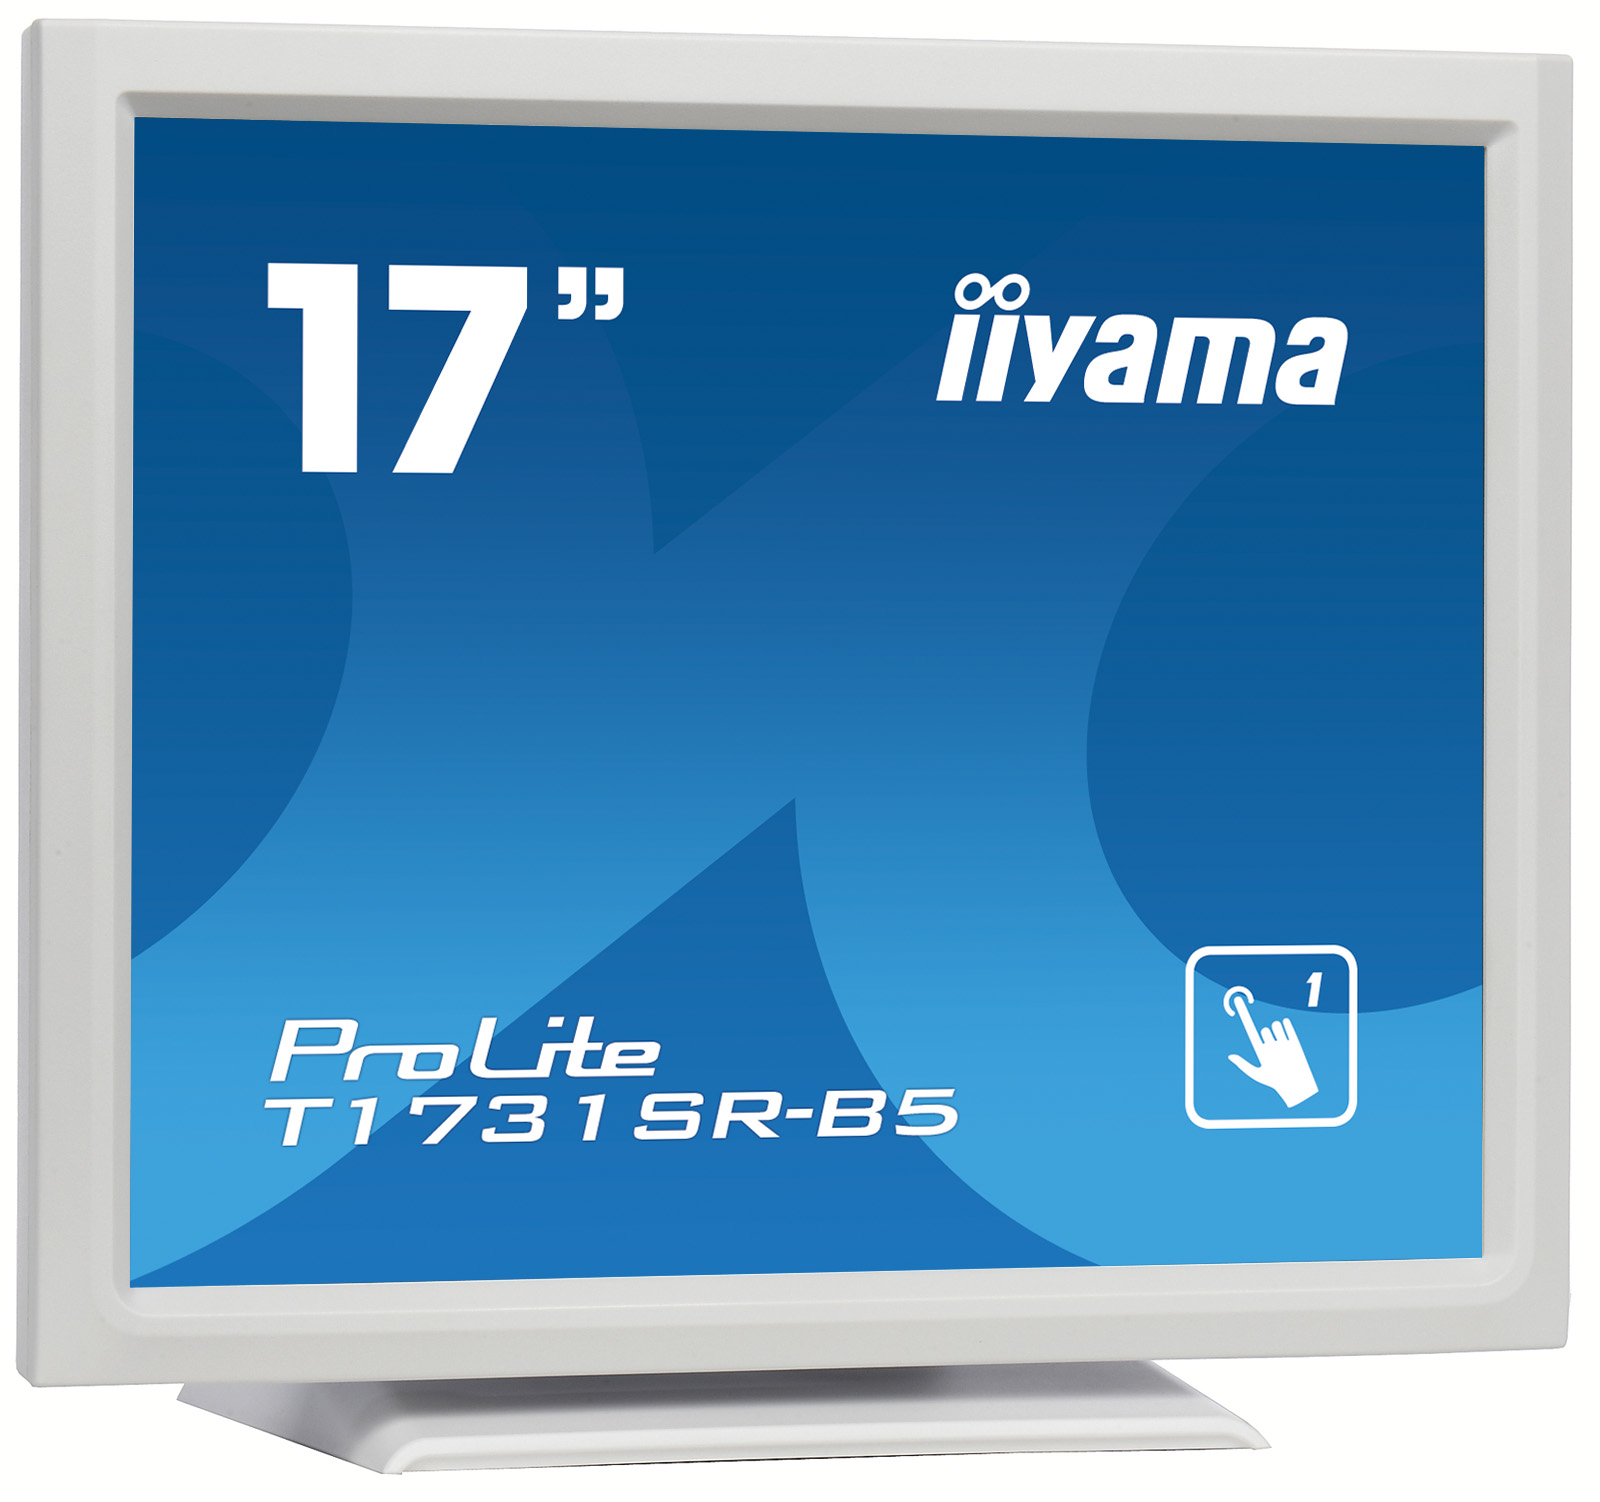 17" iiyama T1731SR-W5 - TN,SXGA,5ms,250cd/m2, 1000:1,5:4,VGA,HDMI,DP,U